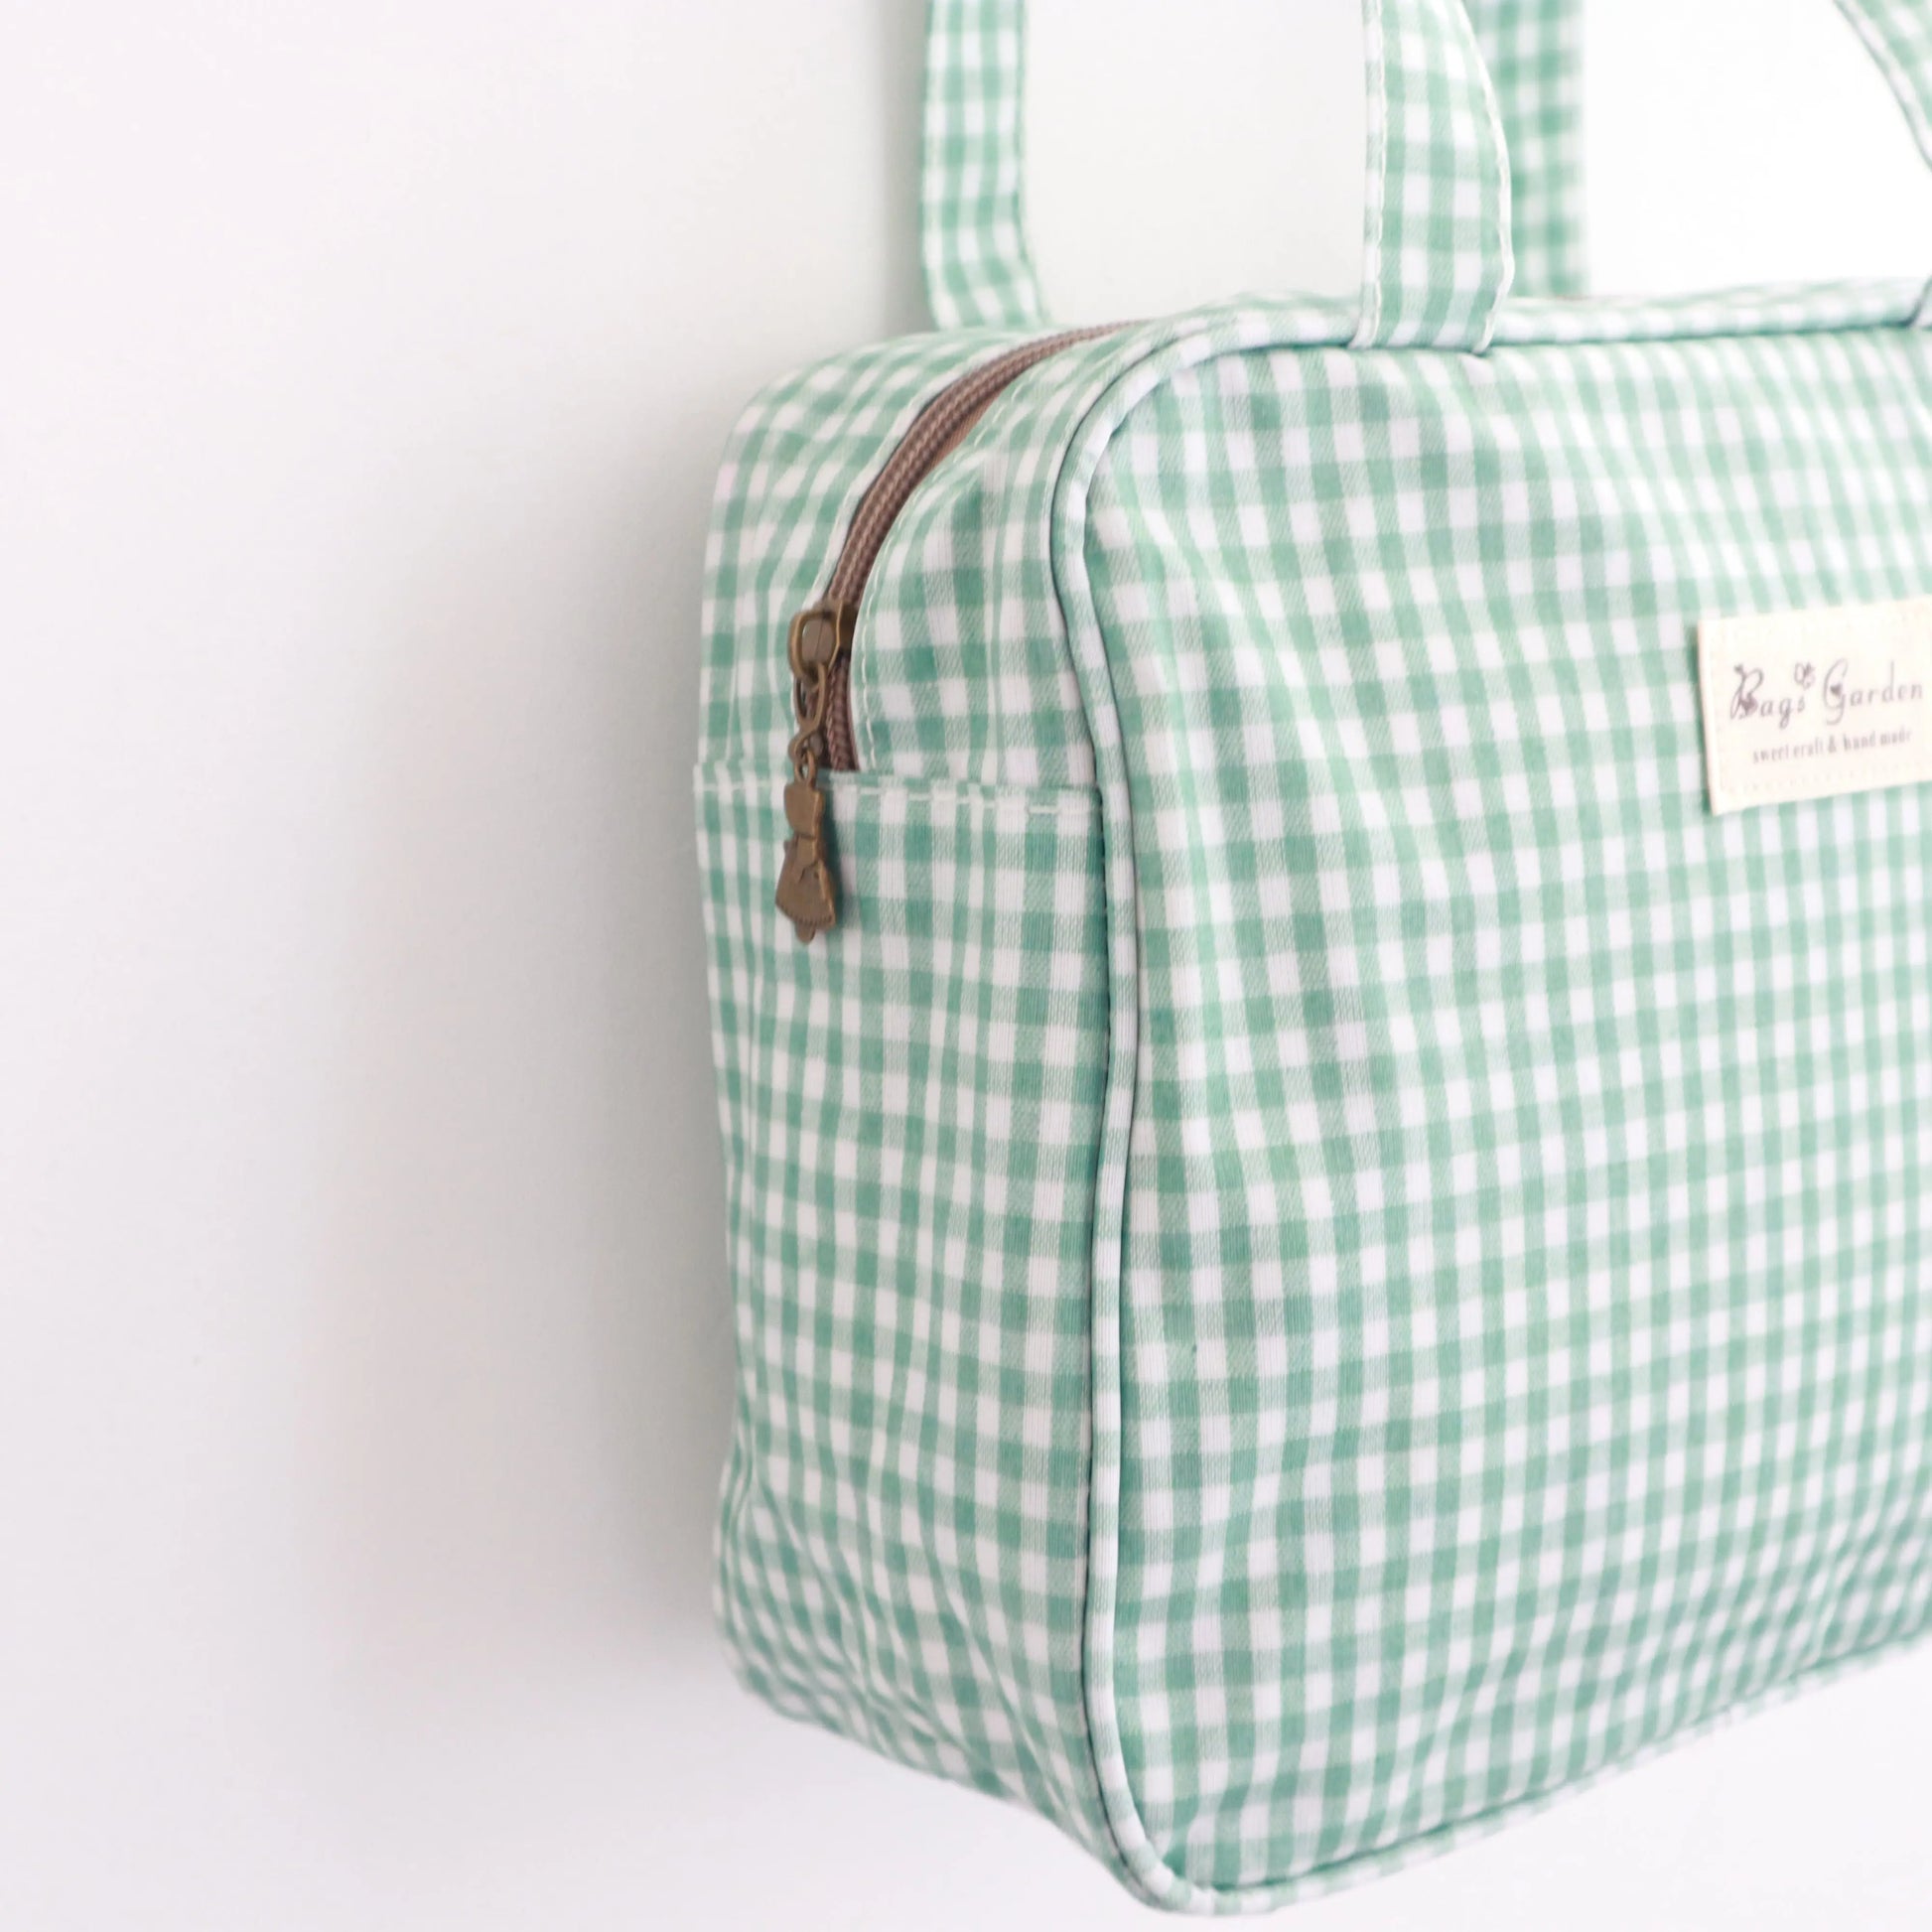 Bags Garden bolso de mano Bolso de mano mini waterproof Vichy Mint Bags Garden Bags Garden